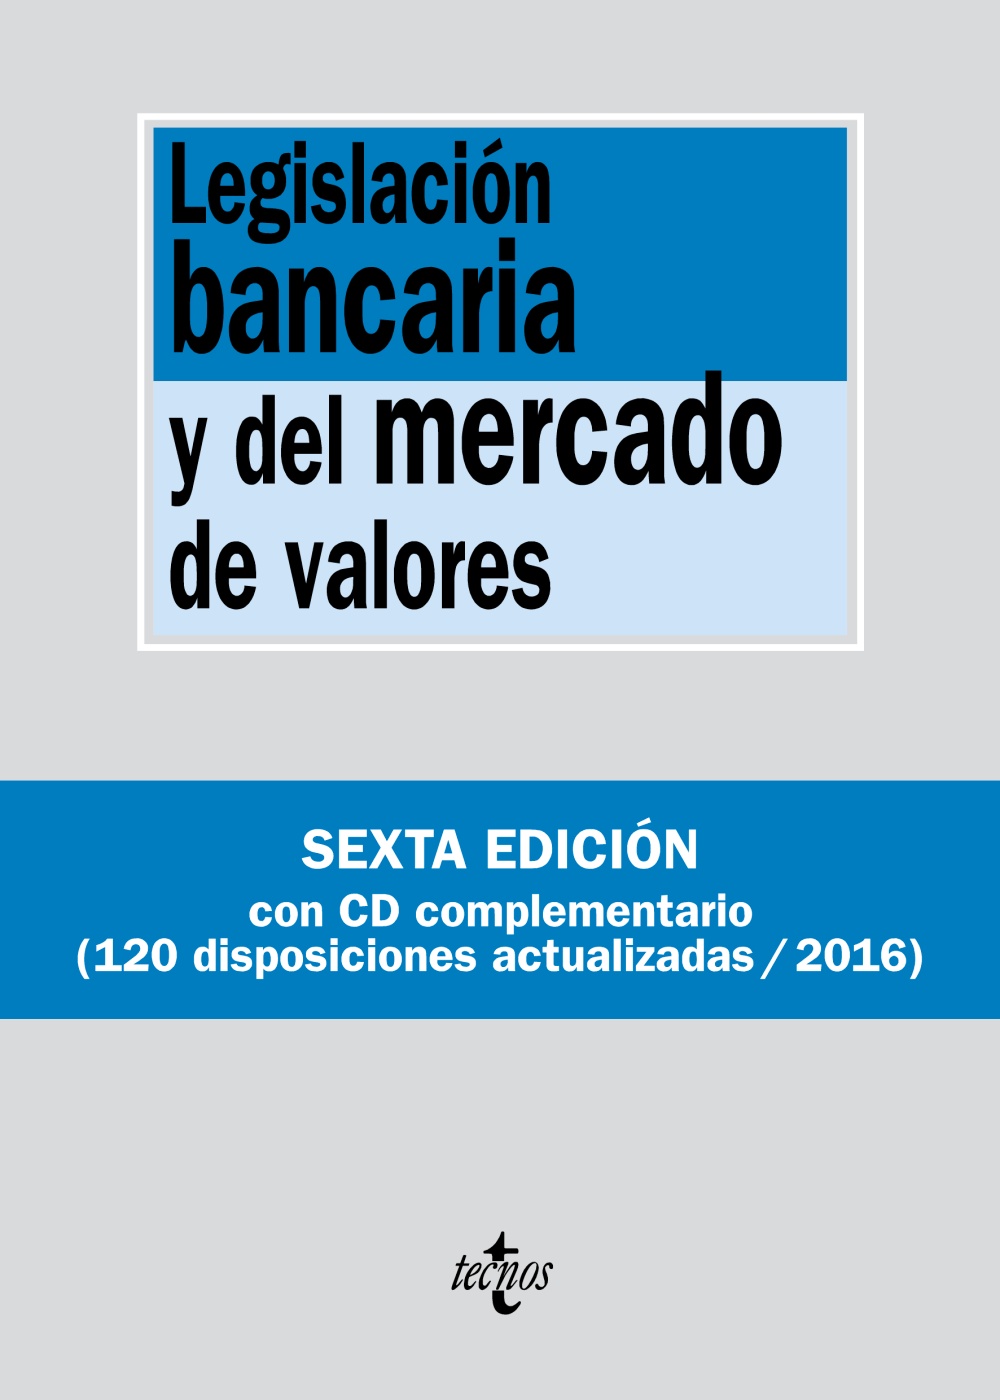 Imagen de portada del libro Legislación bancaria y del mercado de valores